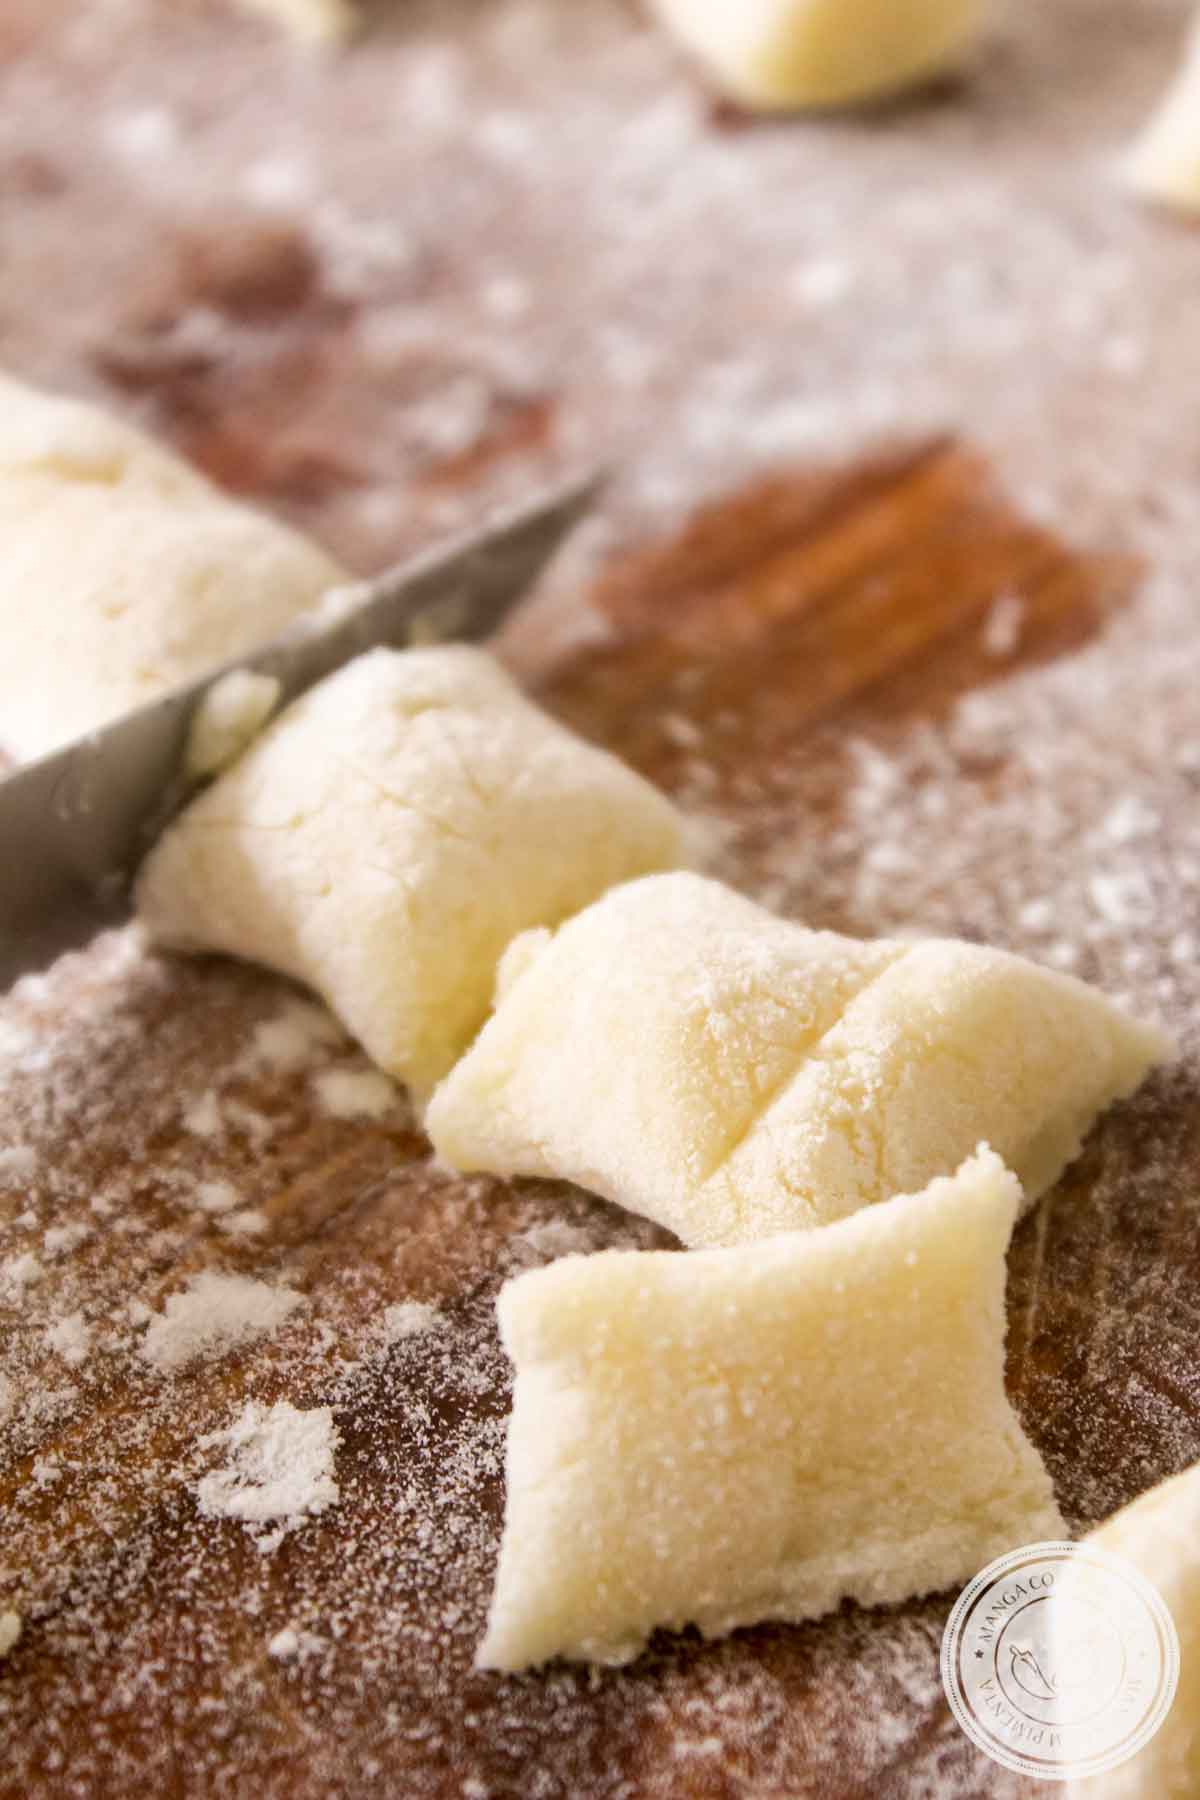 Receita de Nhoque de Batata ou Gnocchi di Patate - prato italiano tradicional com sabor especial.